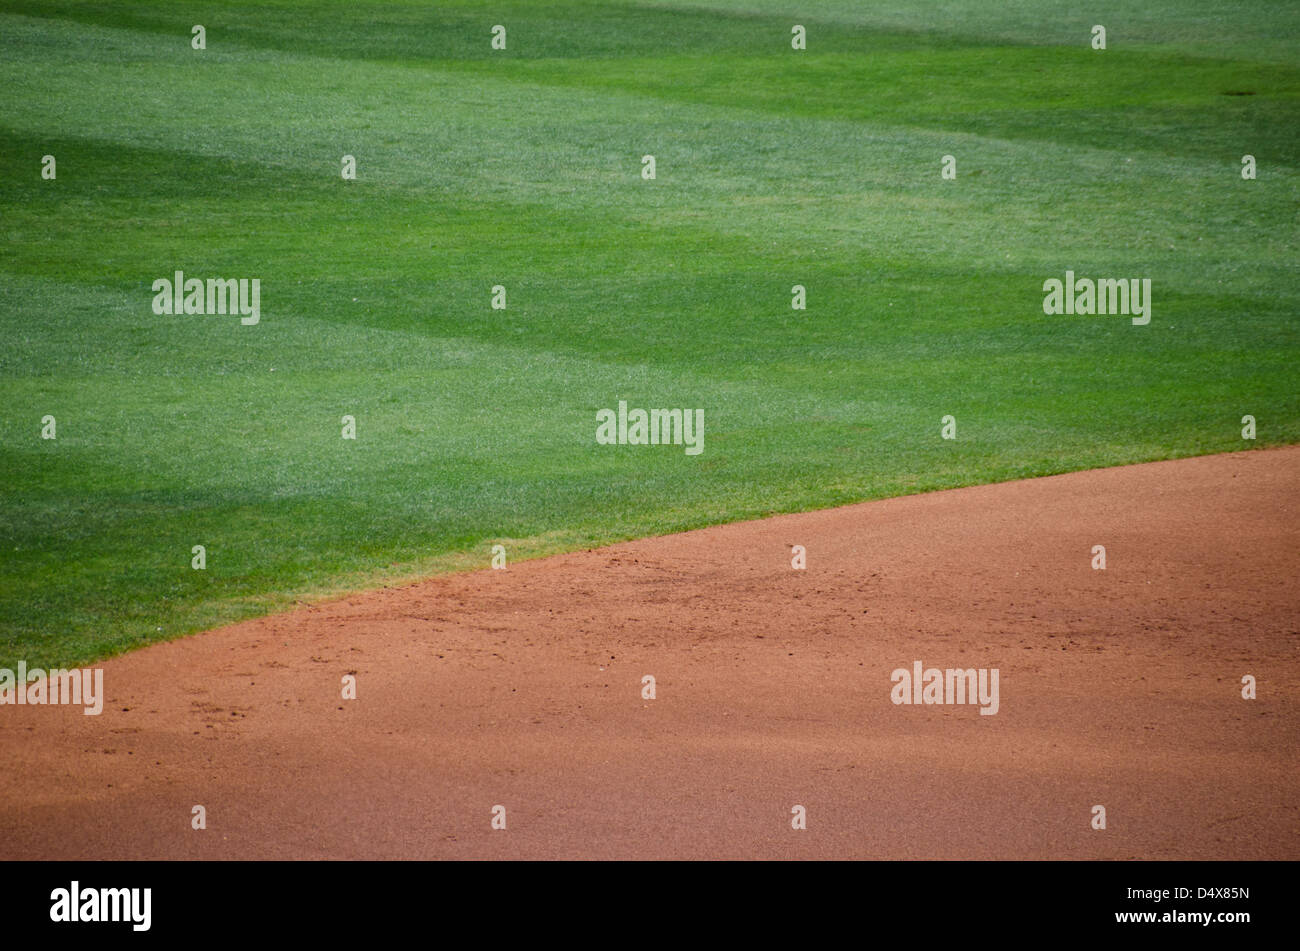 Zusammenfassung Hintergrundtextur der braune Schmutz und grünen Rasen von einem professionellen Baseball-Feld Stockfoto